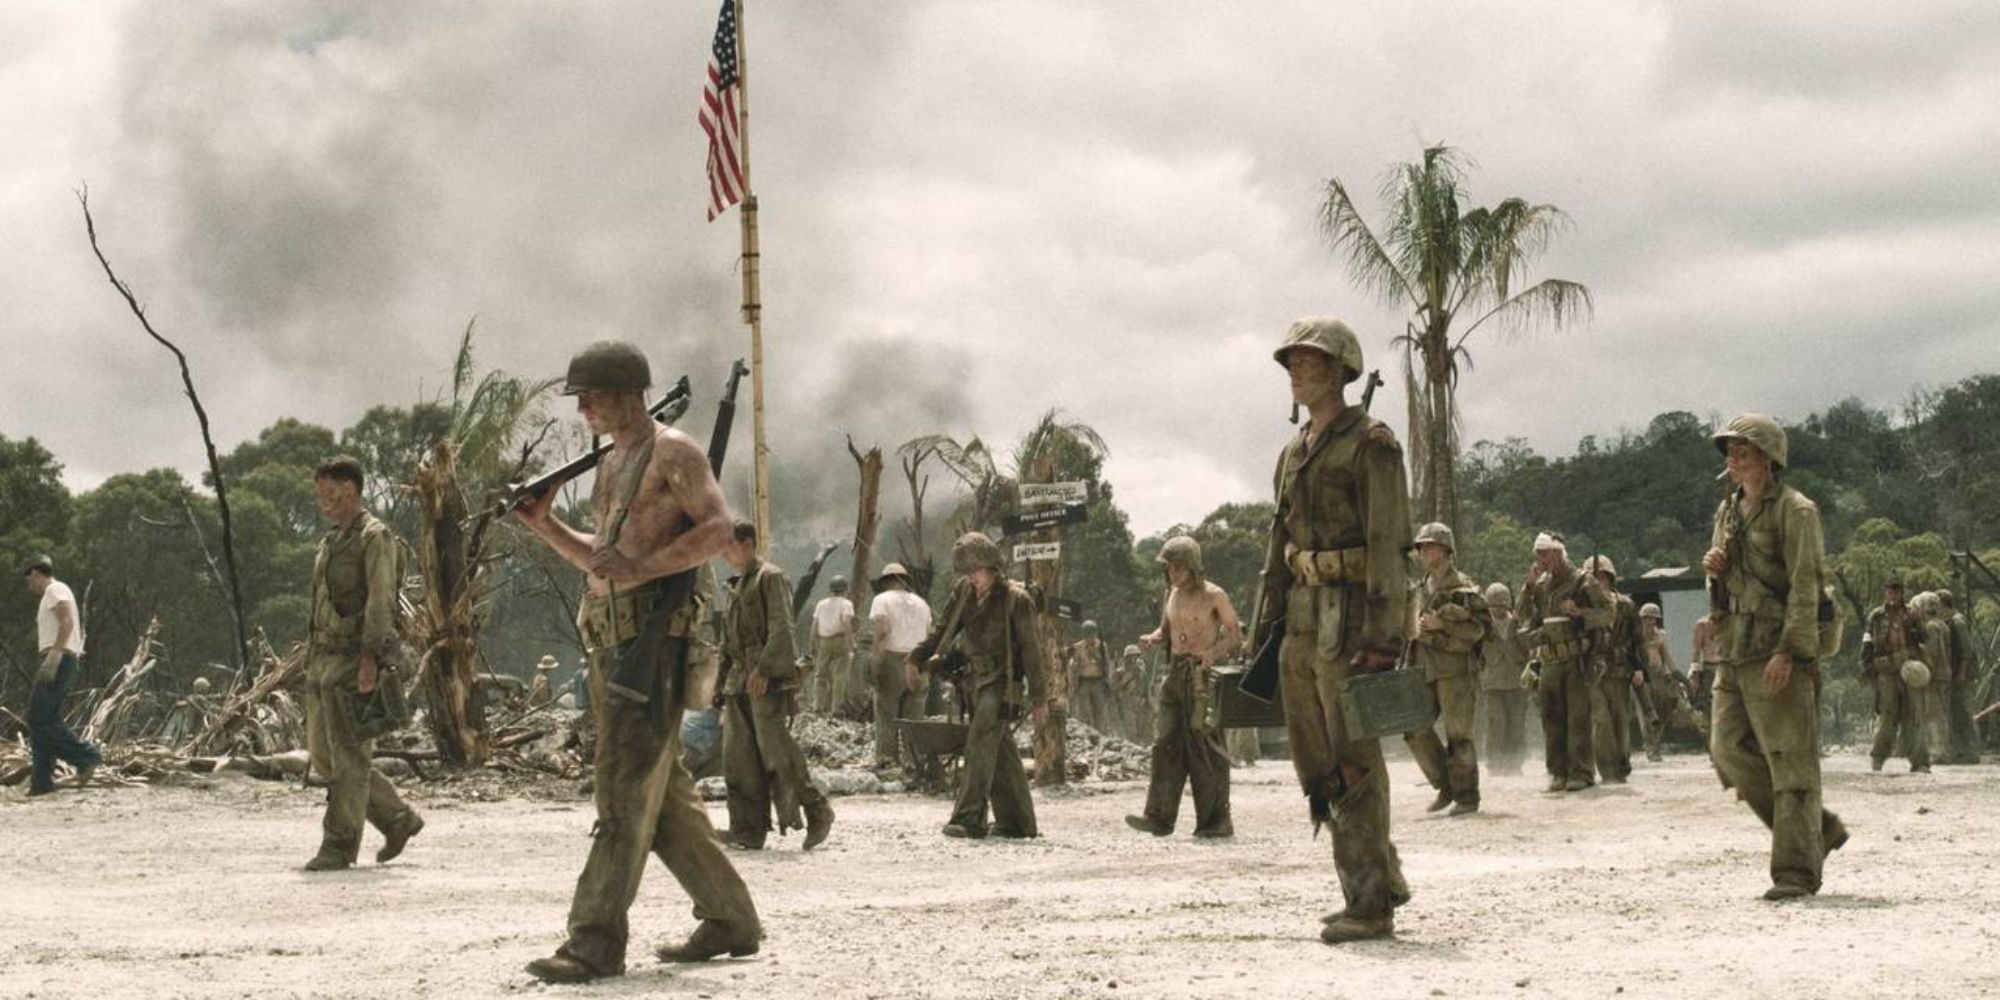 Soldats sur la plage dans la mini-série Le Pacifique.